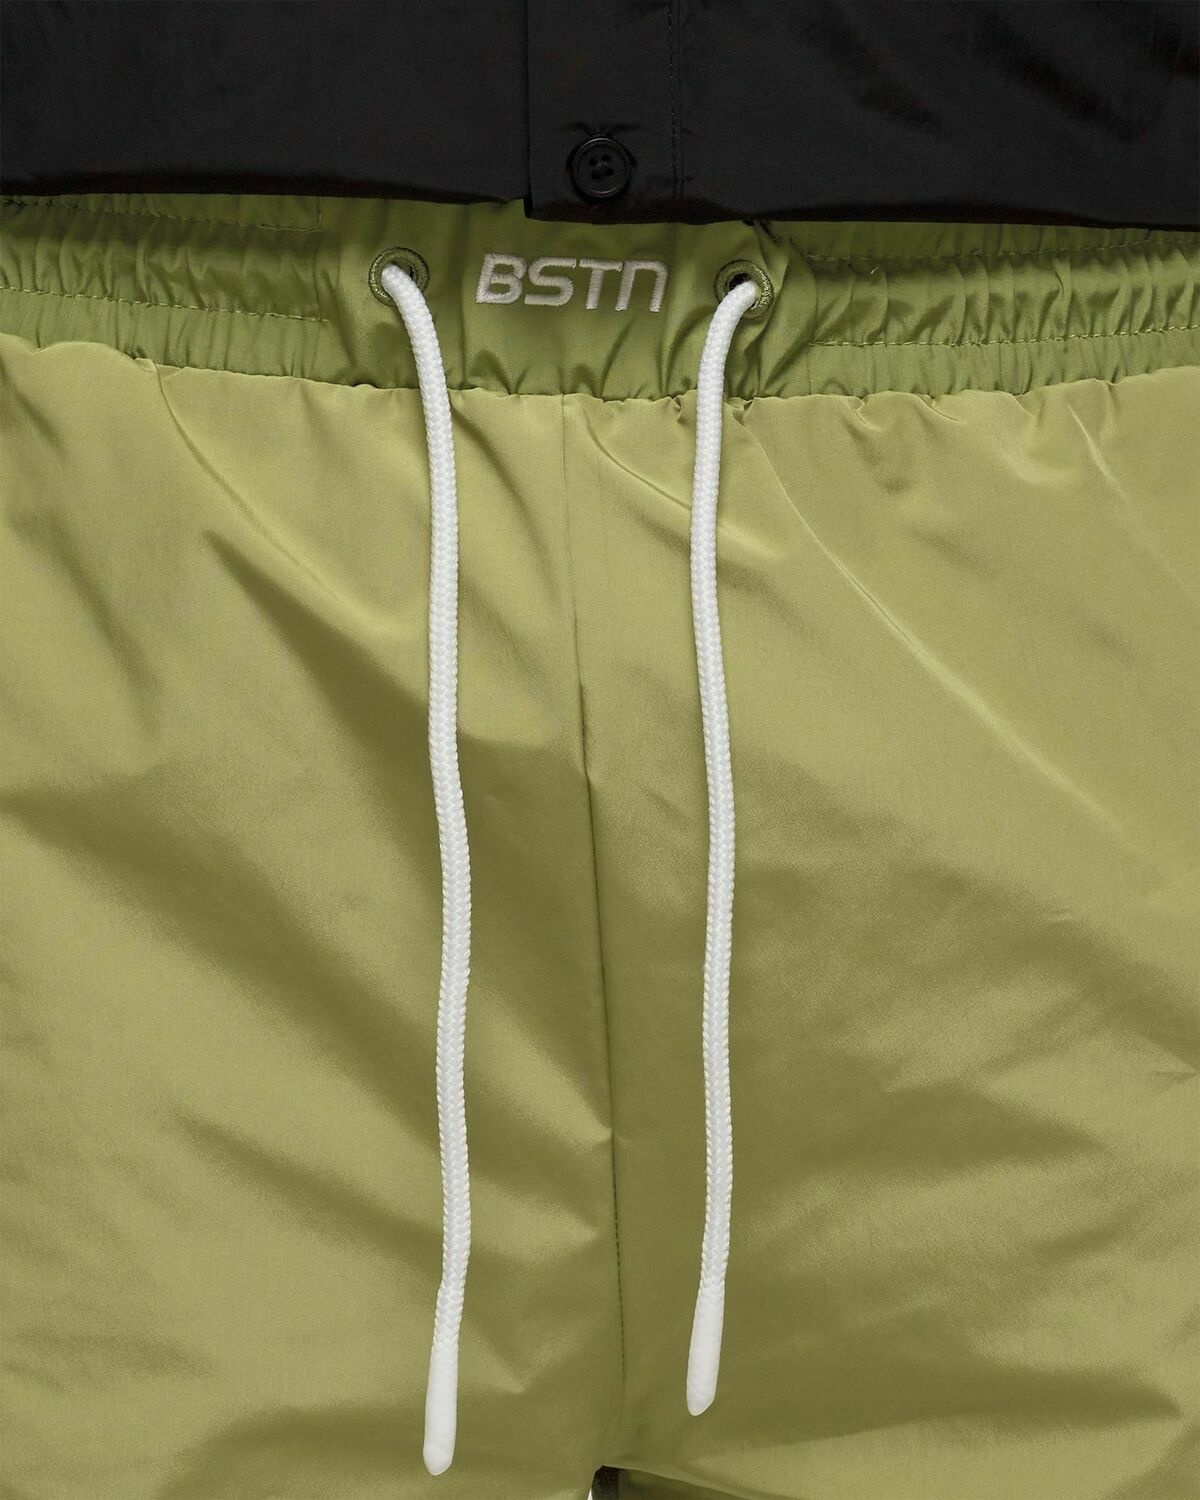 Bstn Brand Lightweight Sport Shorts Green - Mens - Sport & Team Shorts